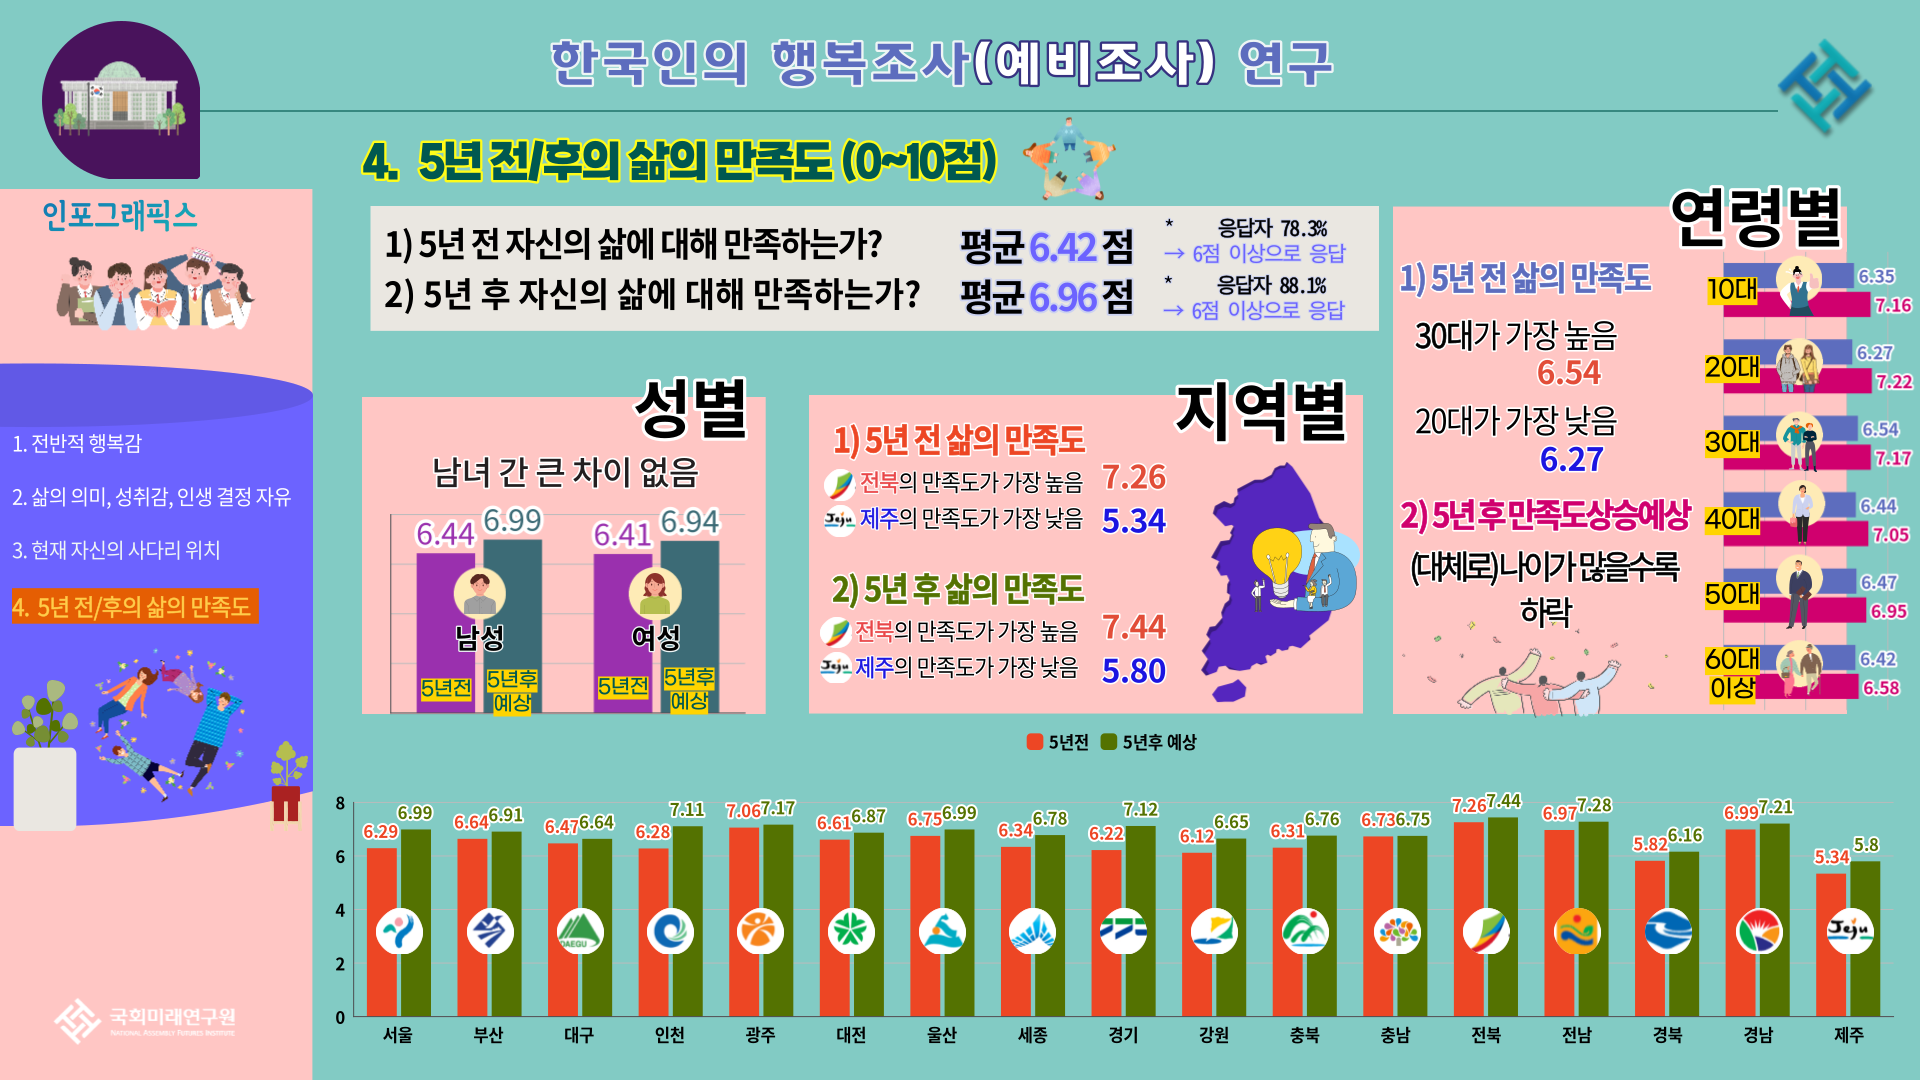 2020년 한국인의 행복조사 결과